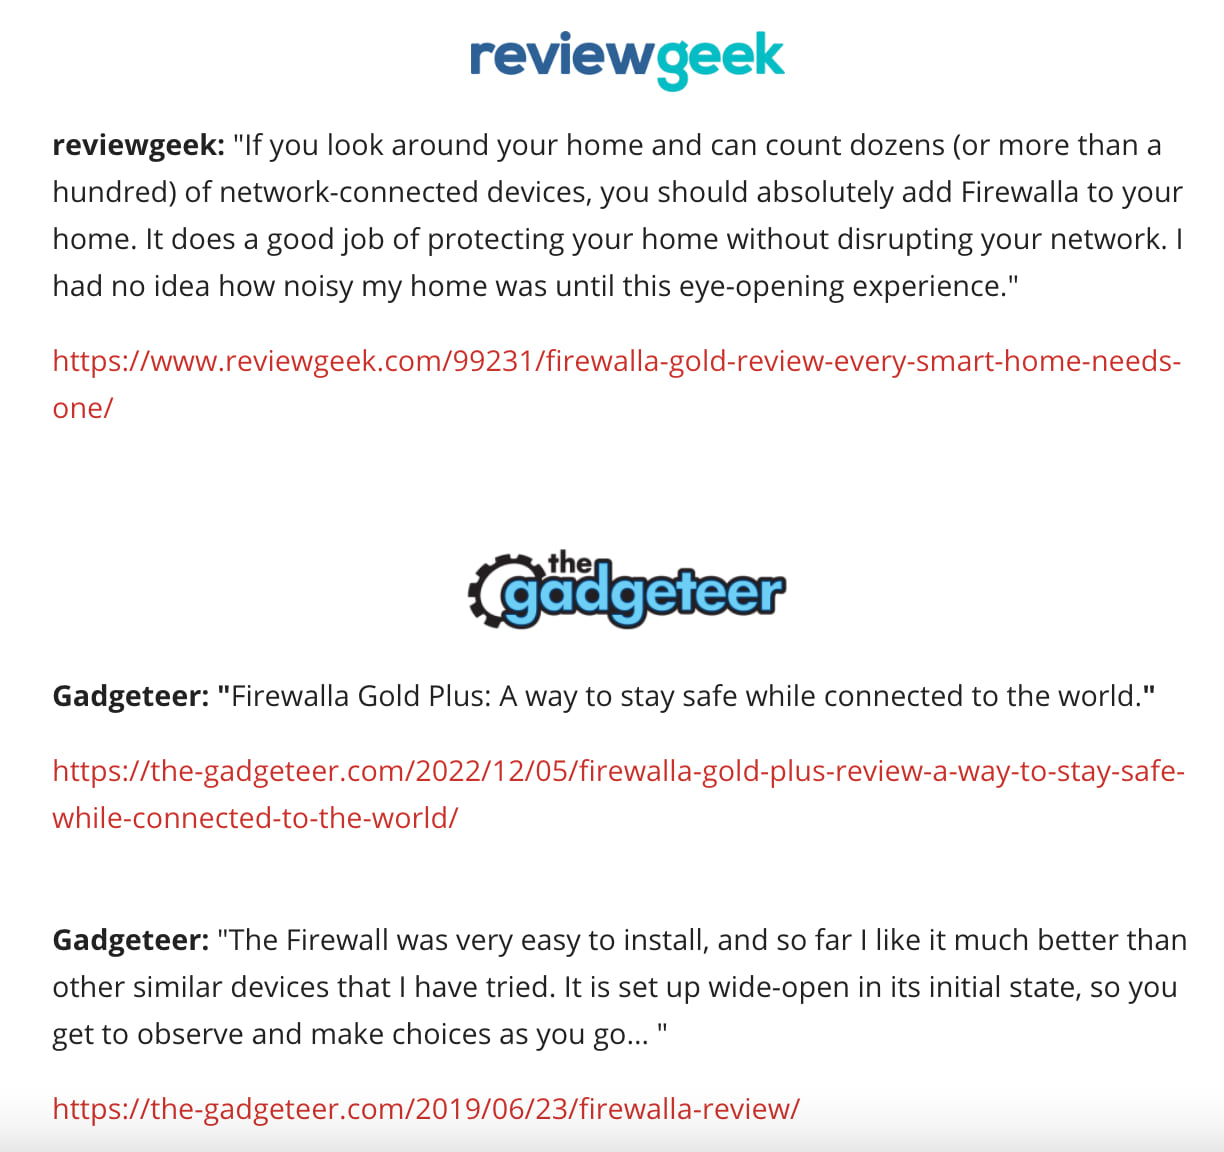 Firewalla Review